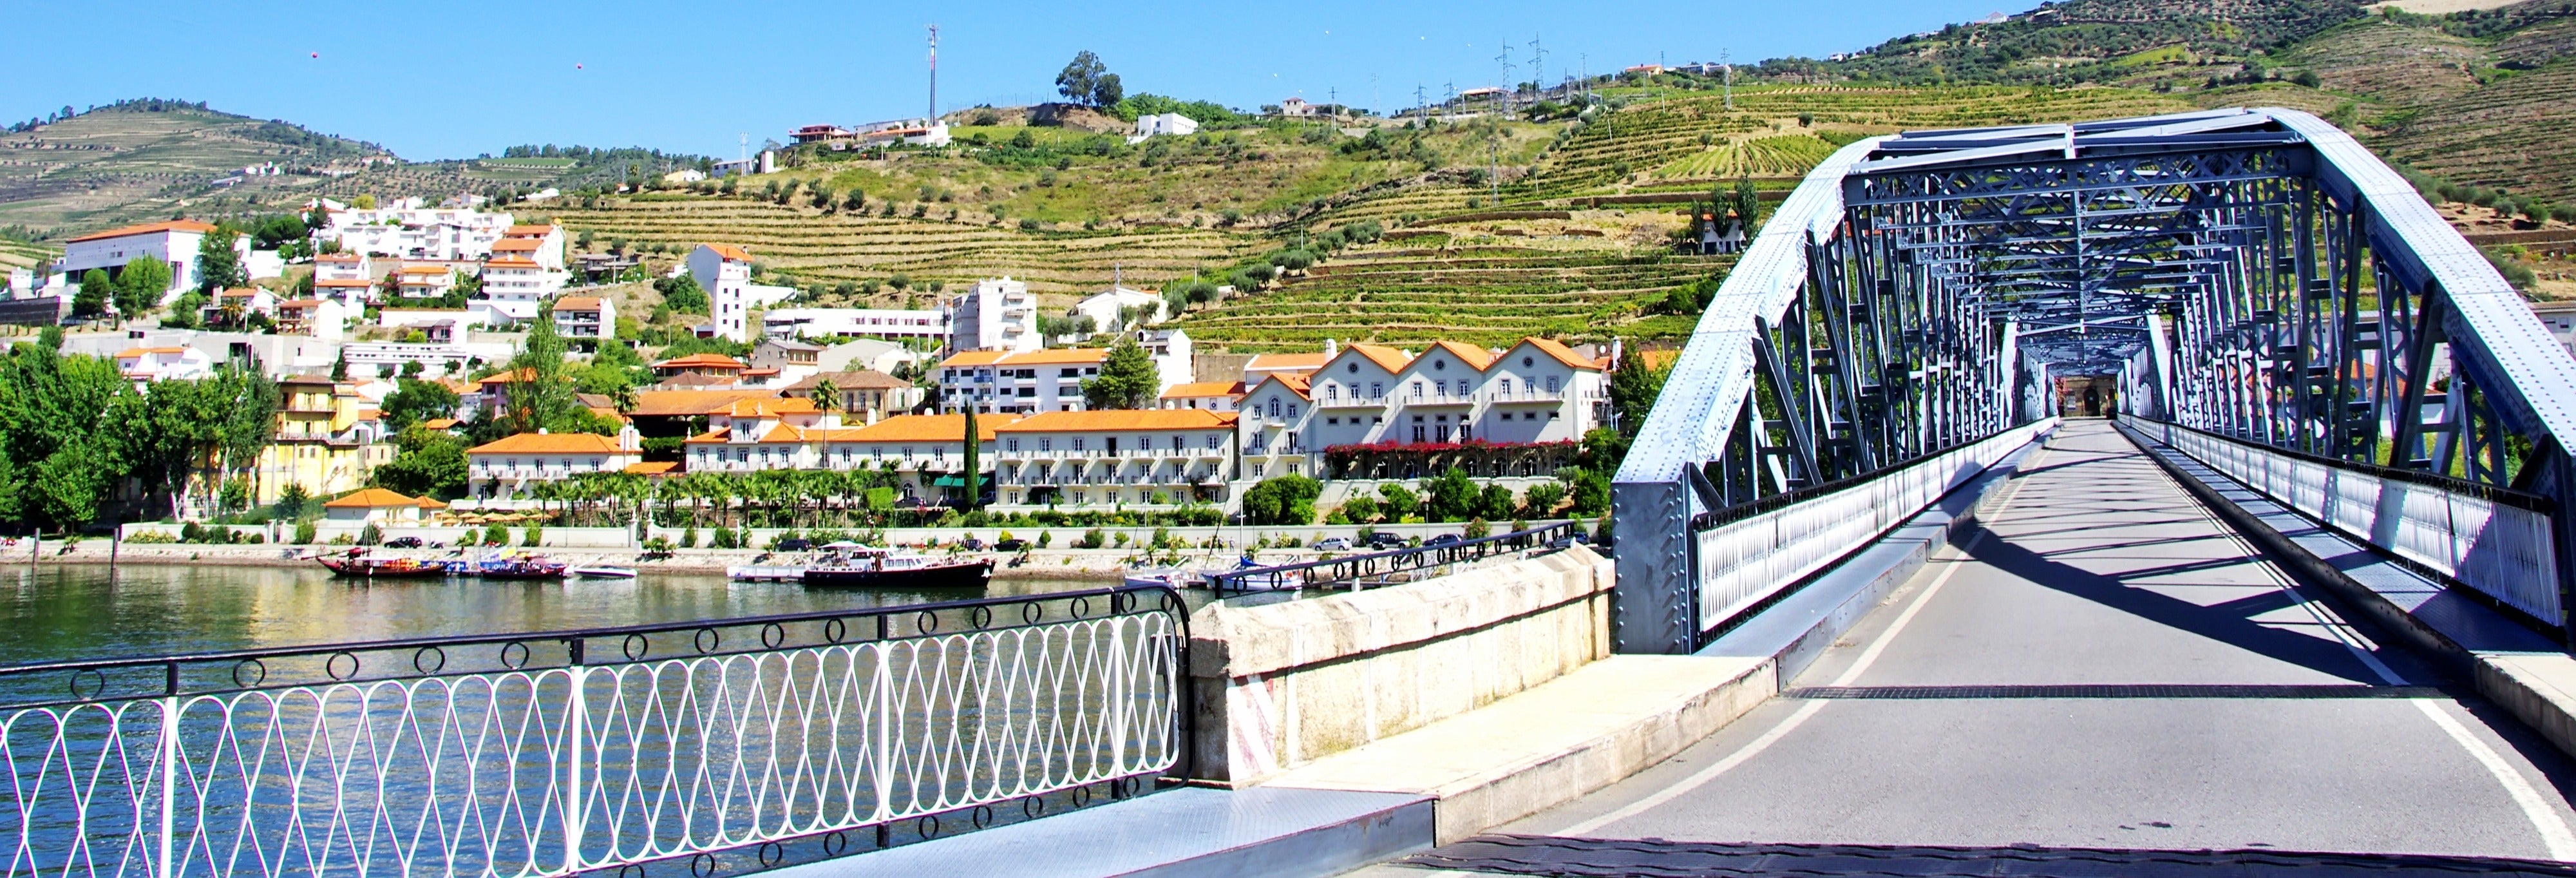 Croisière sur le Douro + Visite de Pinhão